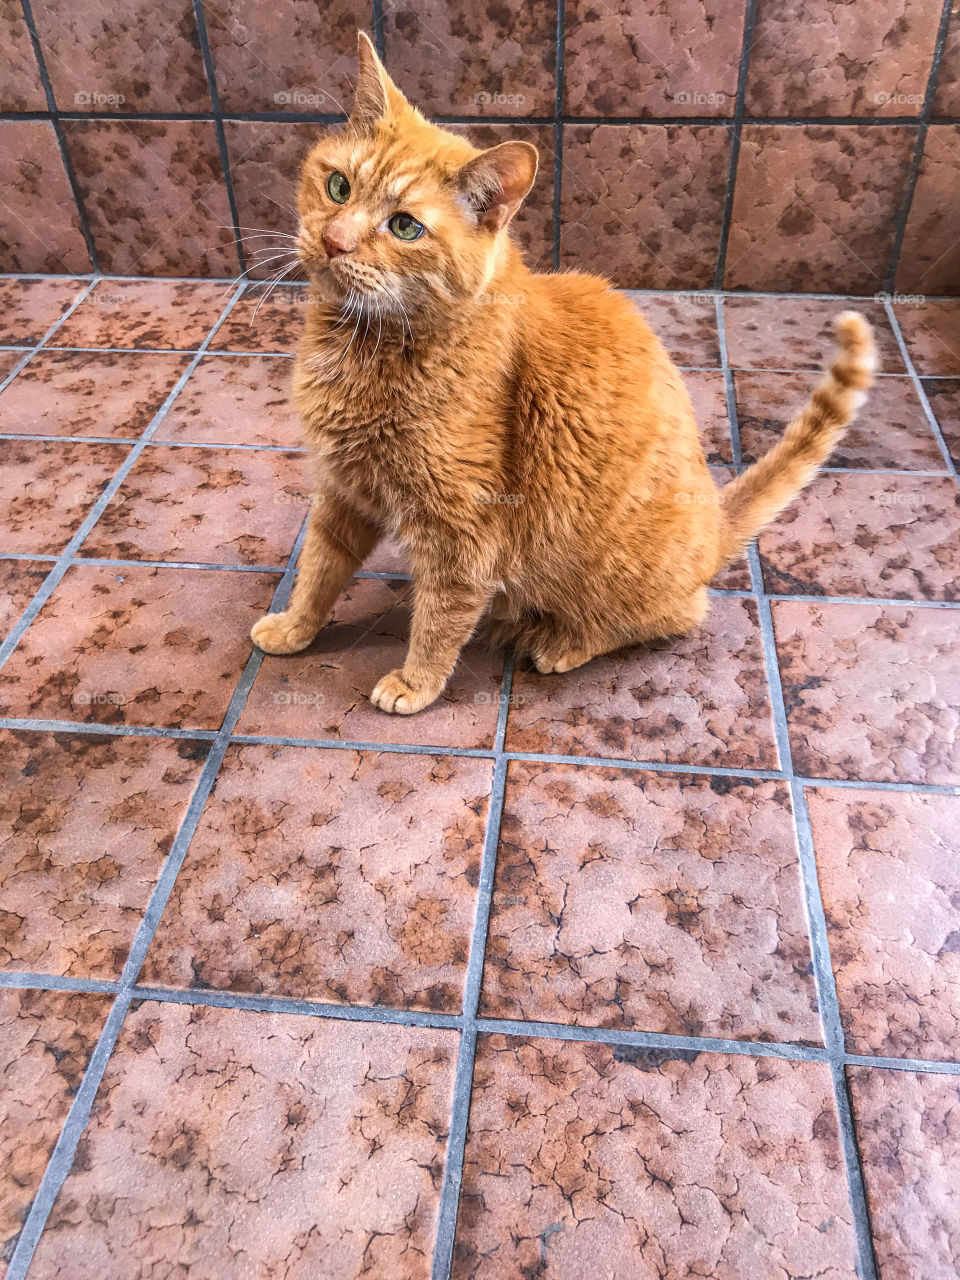 Full length ginger tabby cat sitting on tile flooring 